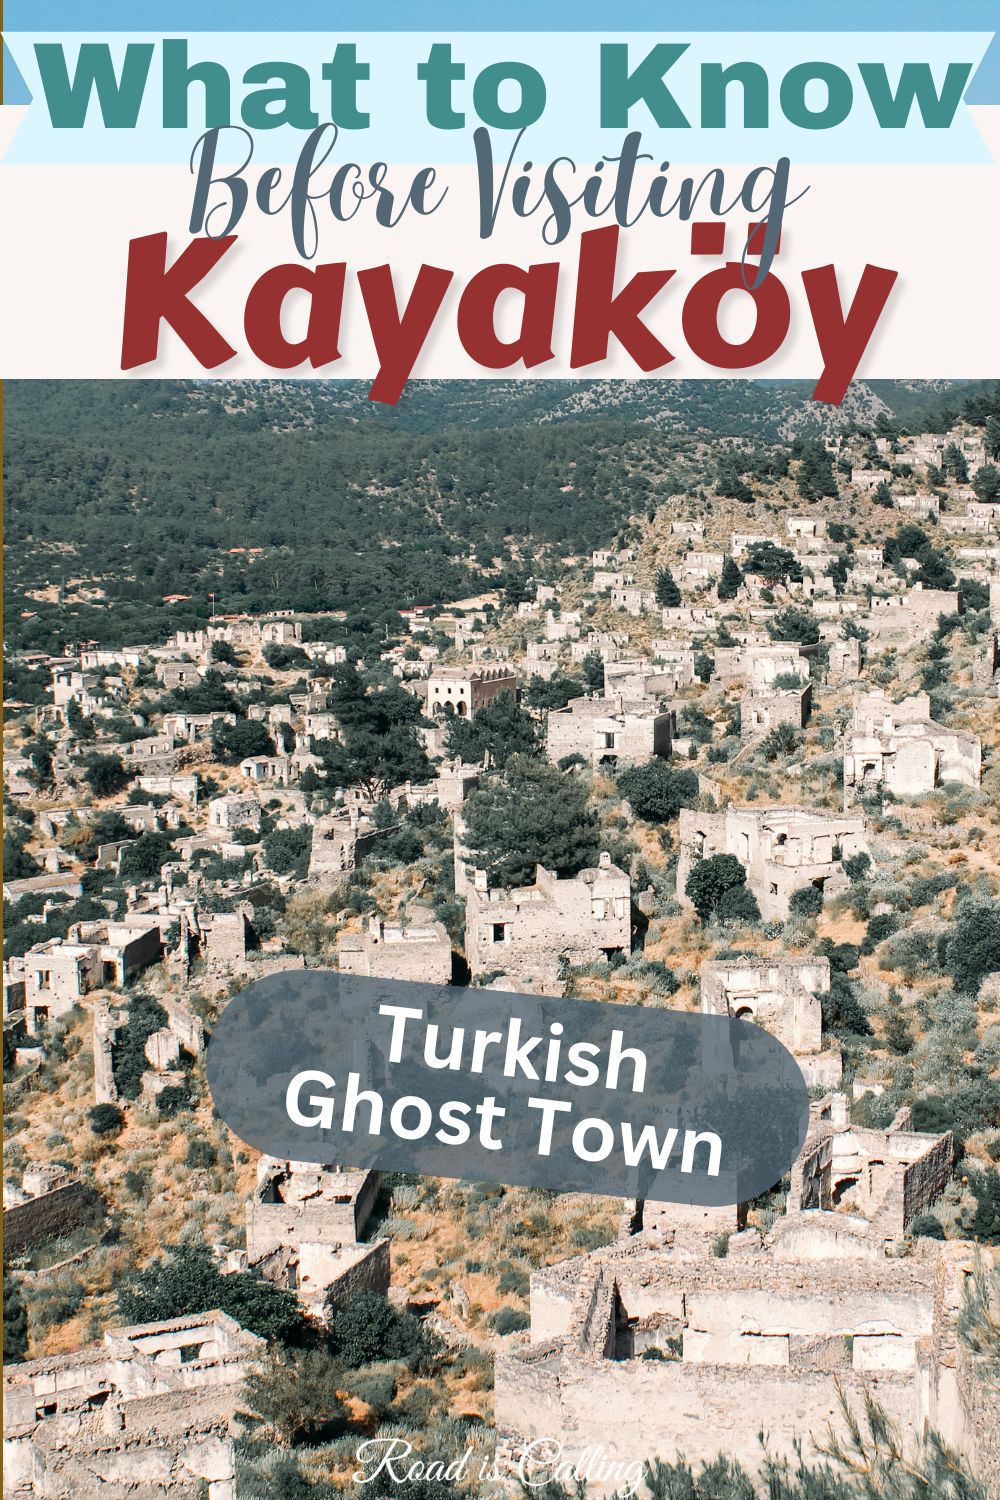 Kayakoy ghost town Turkey